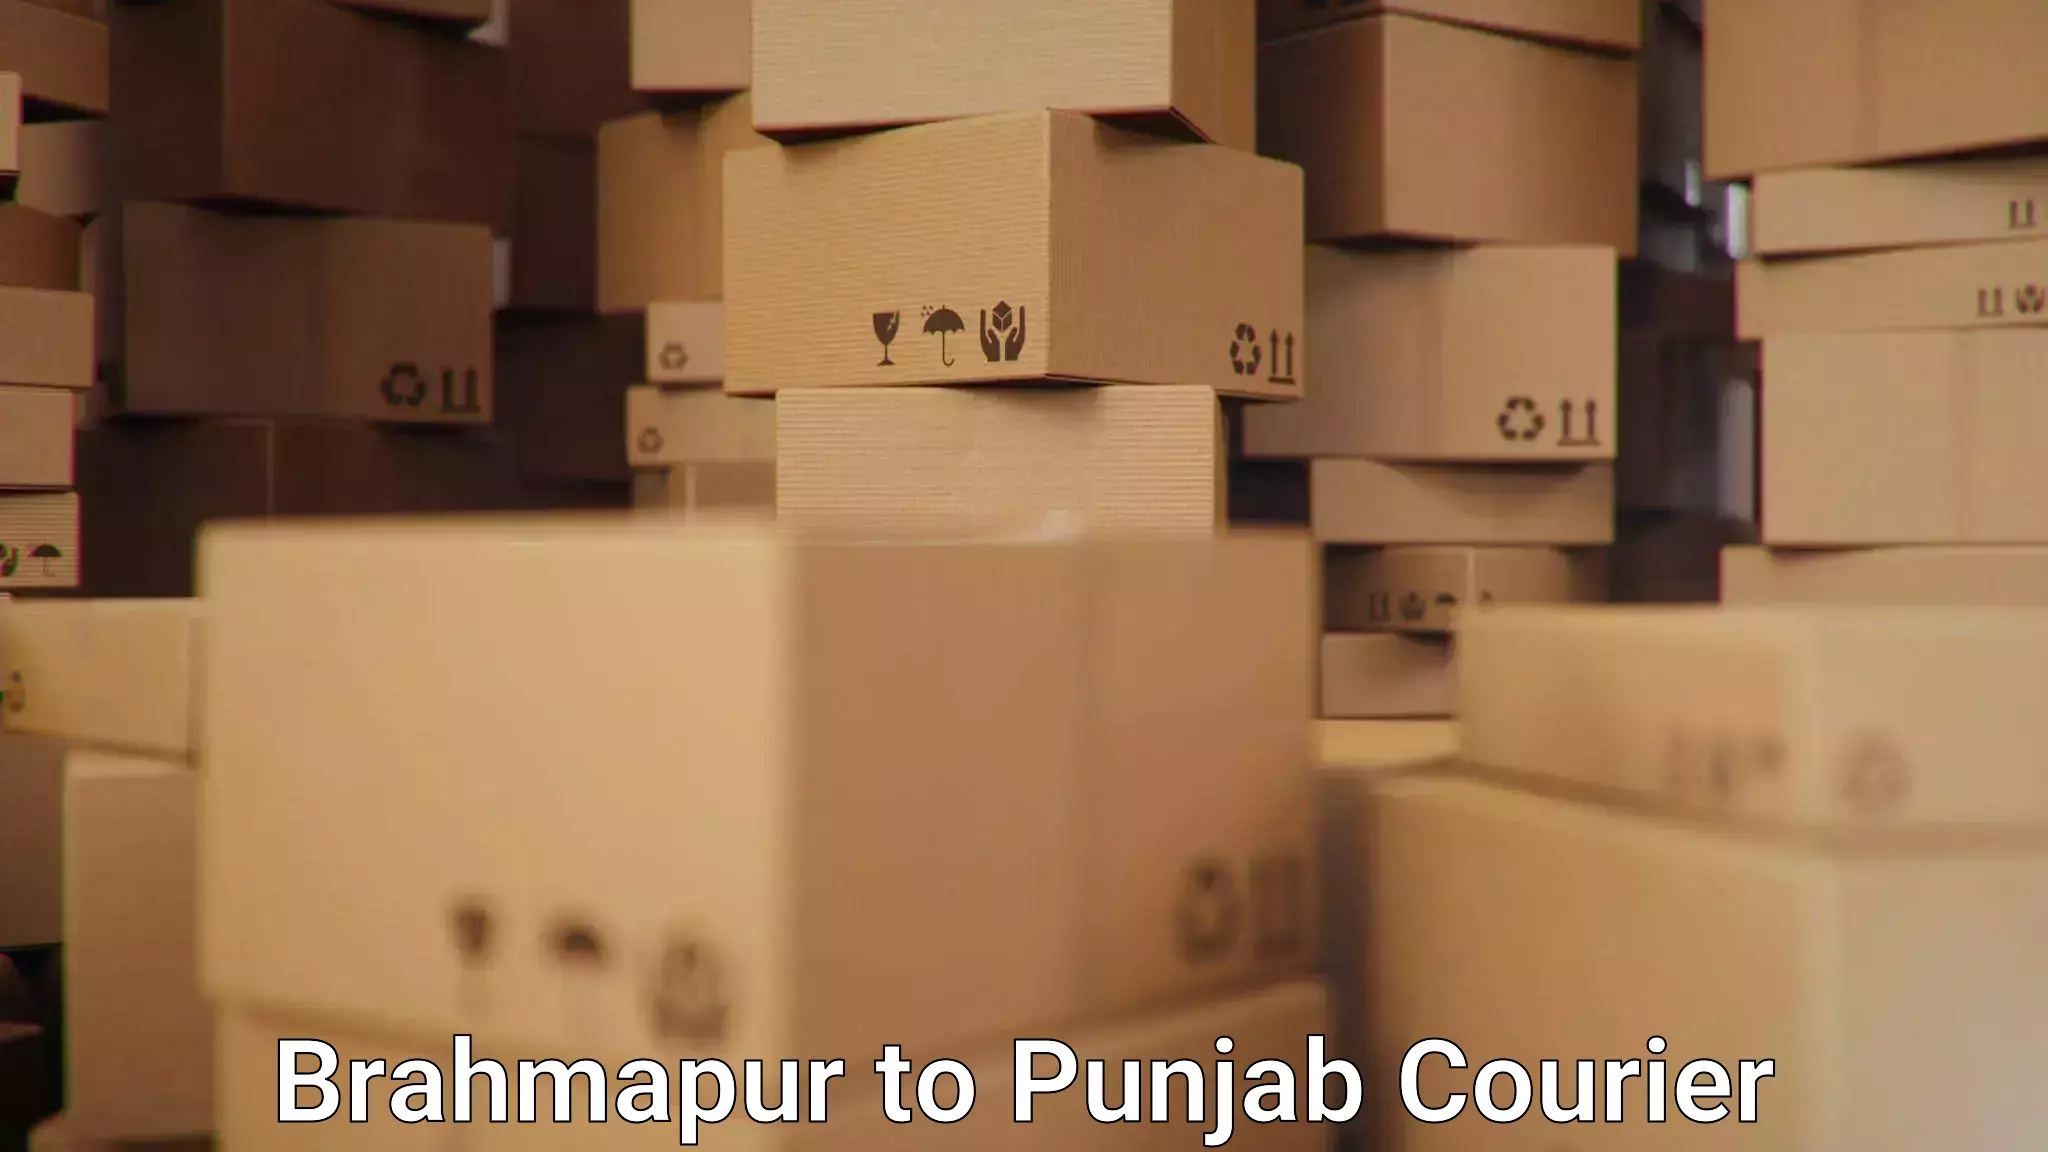 Reliable courier service Brahmapur to Punjab